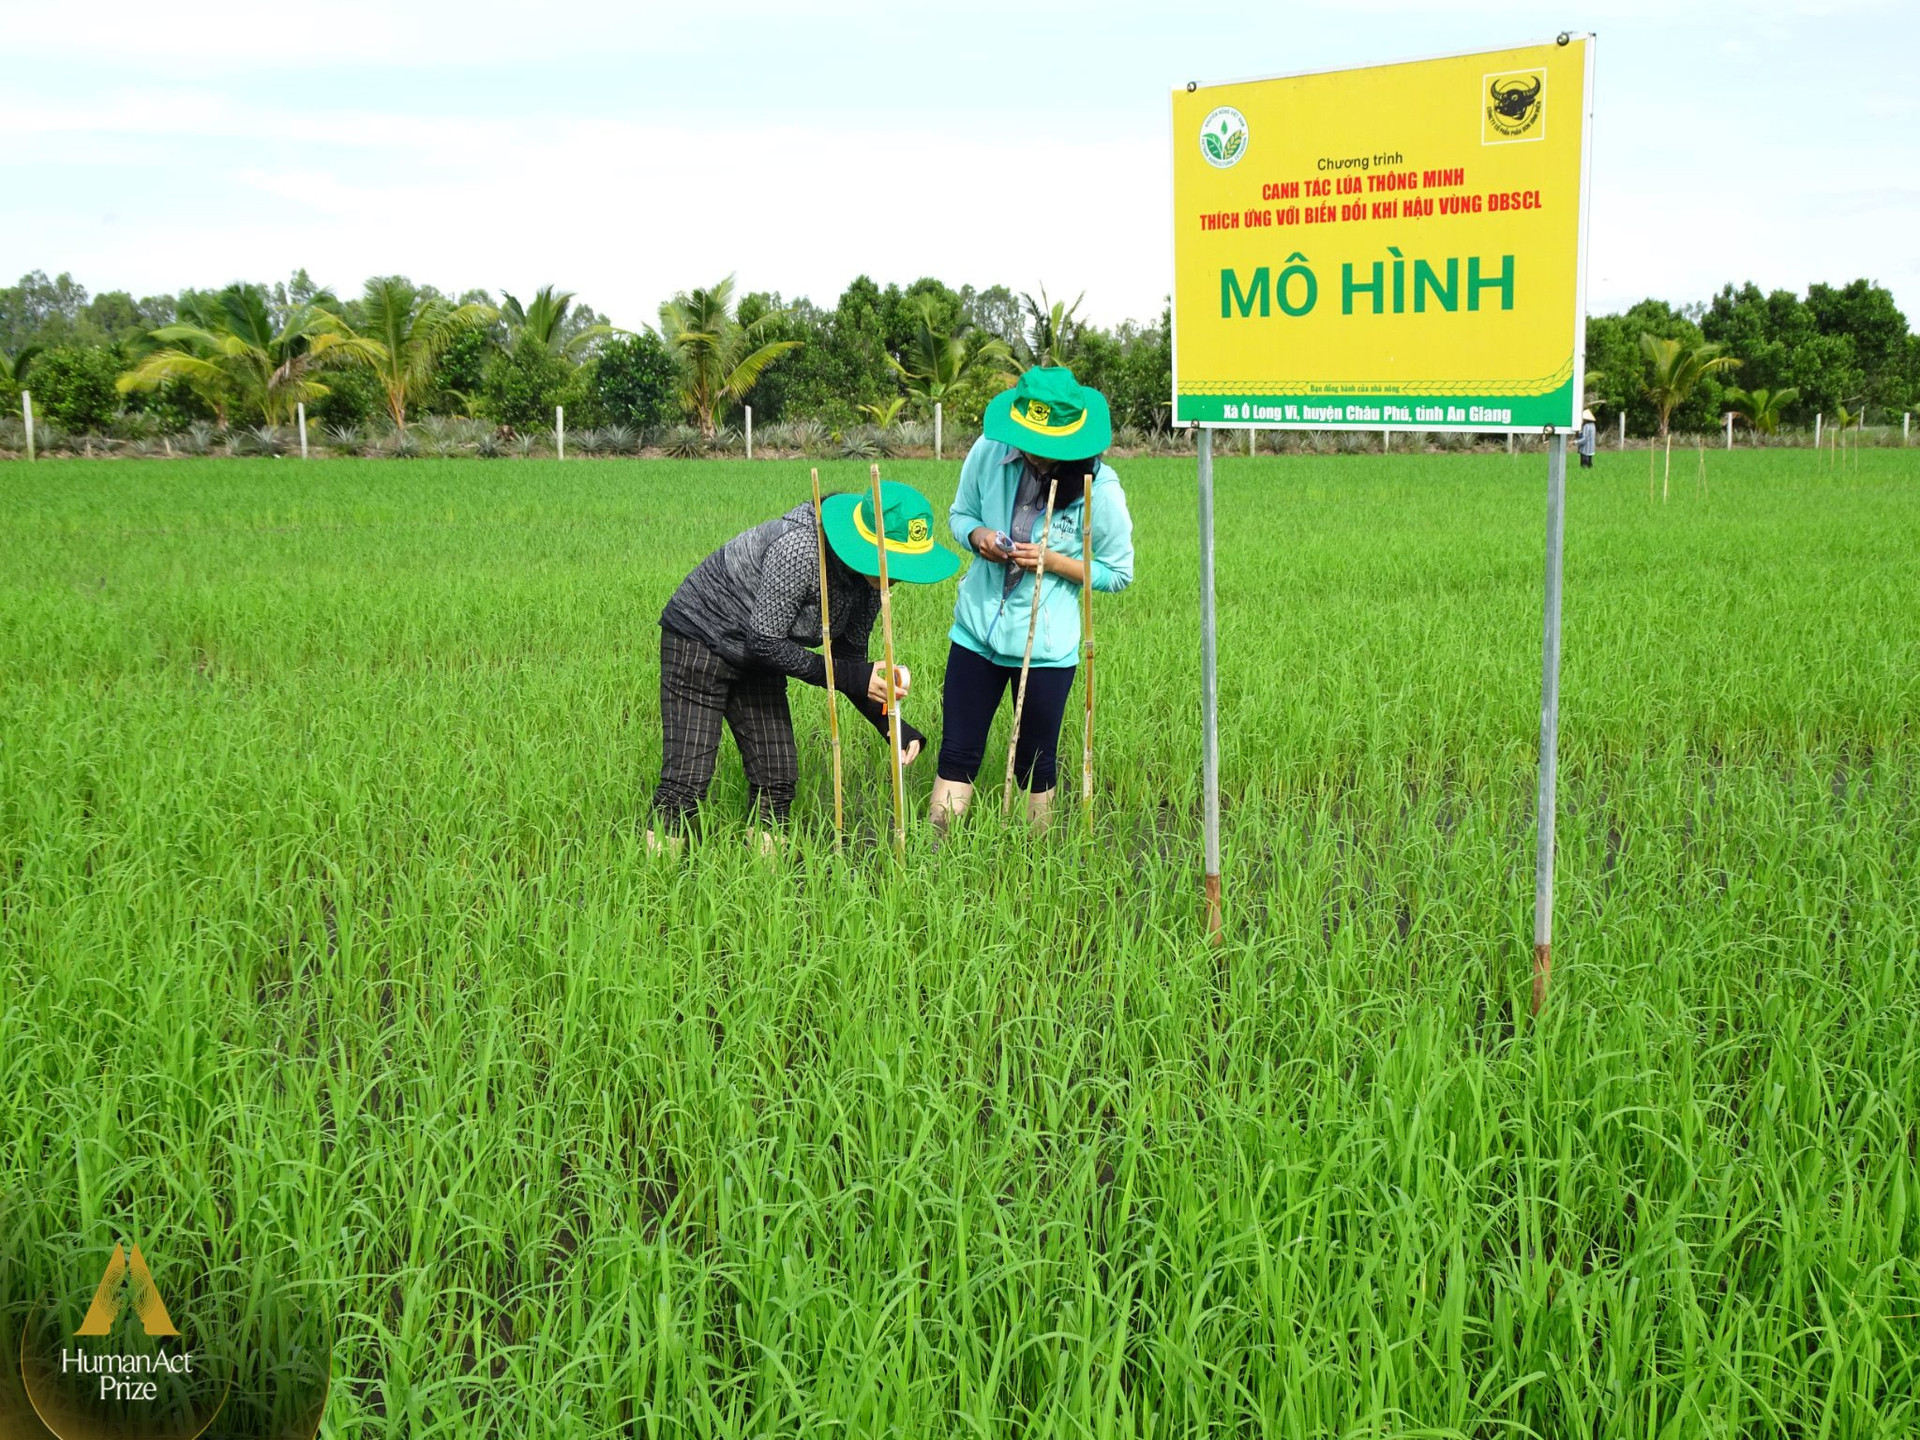 Doanh nghiệp phân bón khuyến cáo nông dân bón ít hơn và câu chuyện phát triển nông nghiệp bền vững vùng Đồng bằng Sông Cửu Long - Ảnh 1.